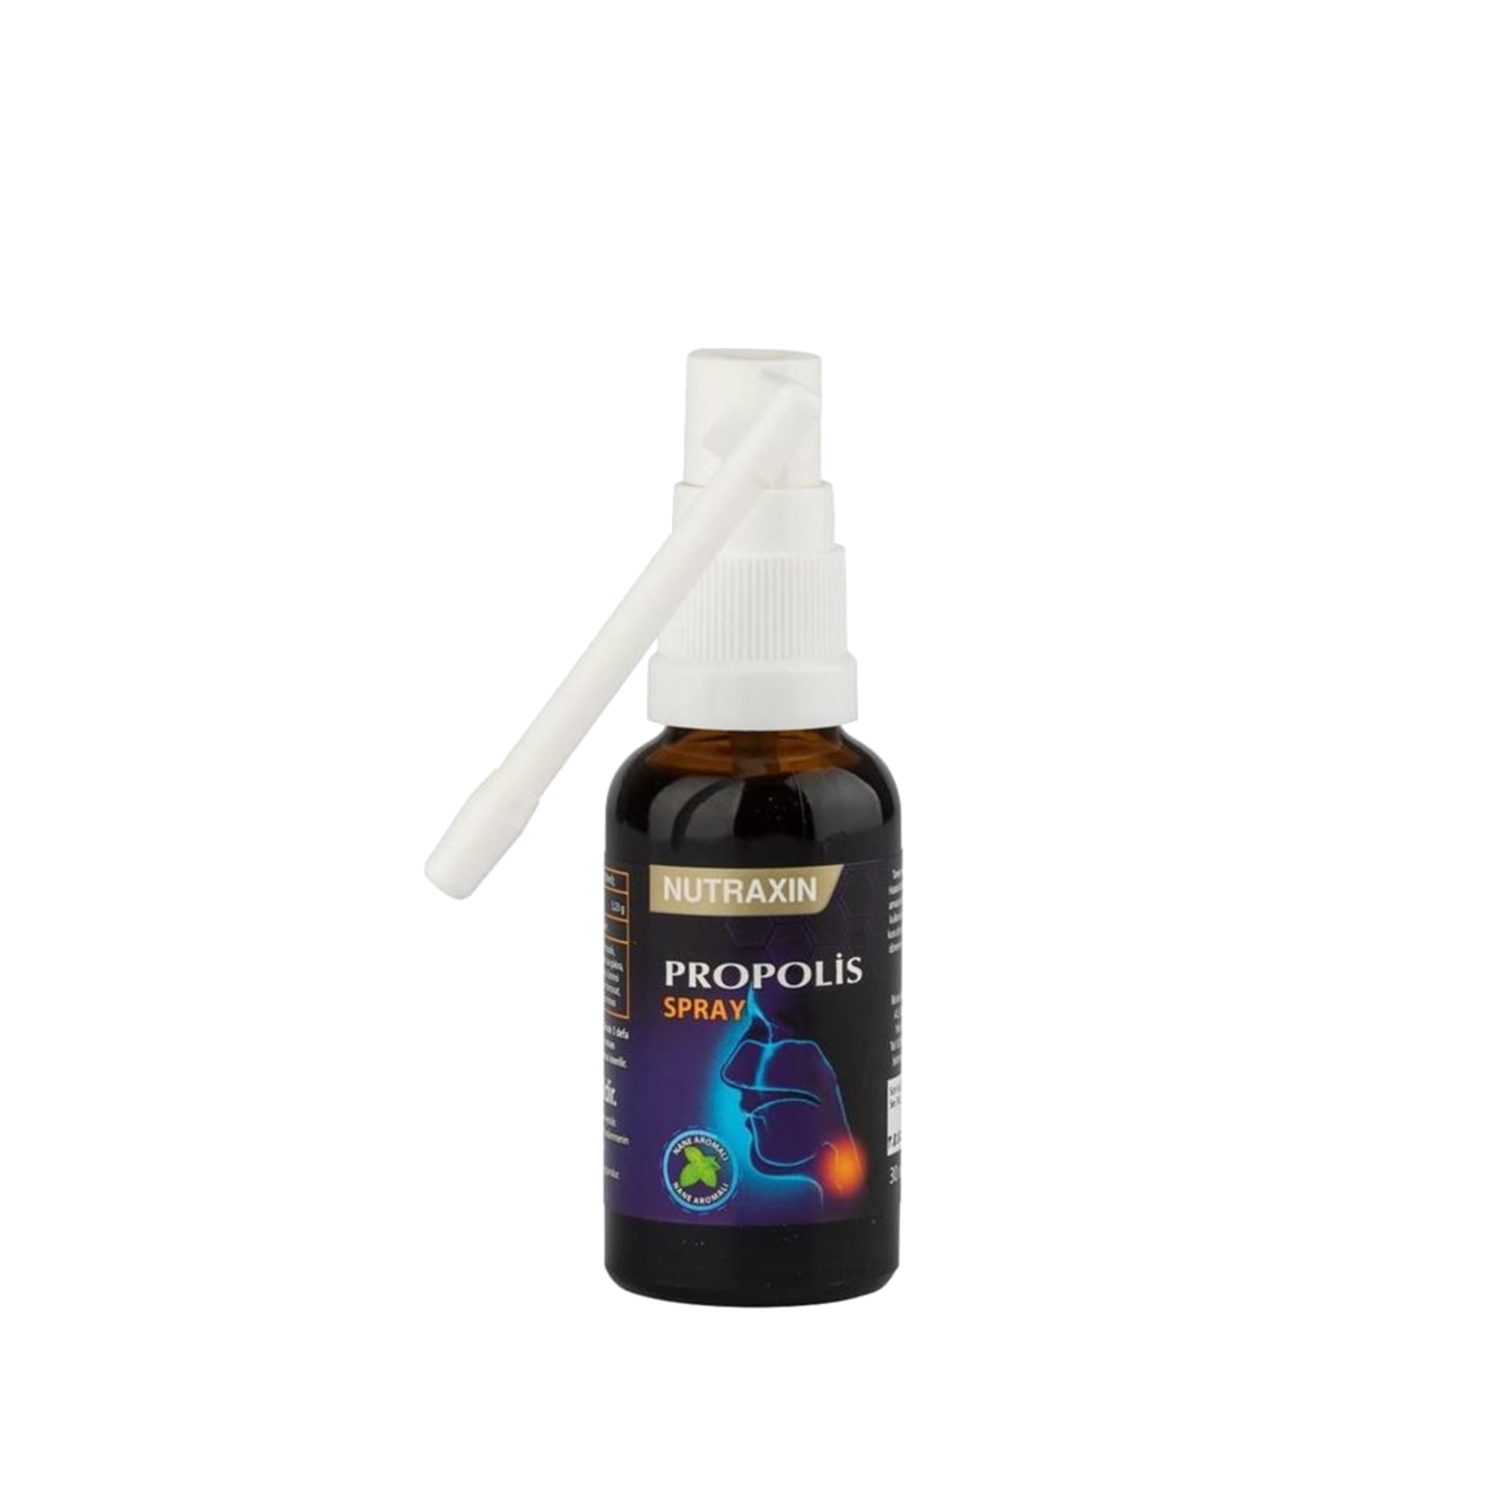 Nutraxin Propolis Spray 30ml